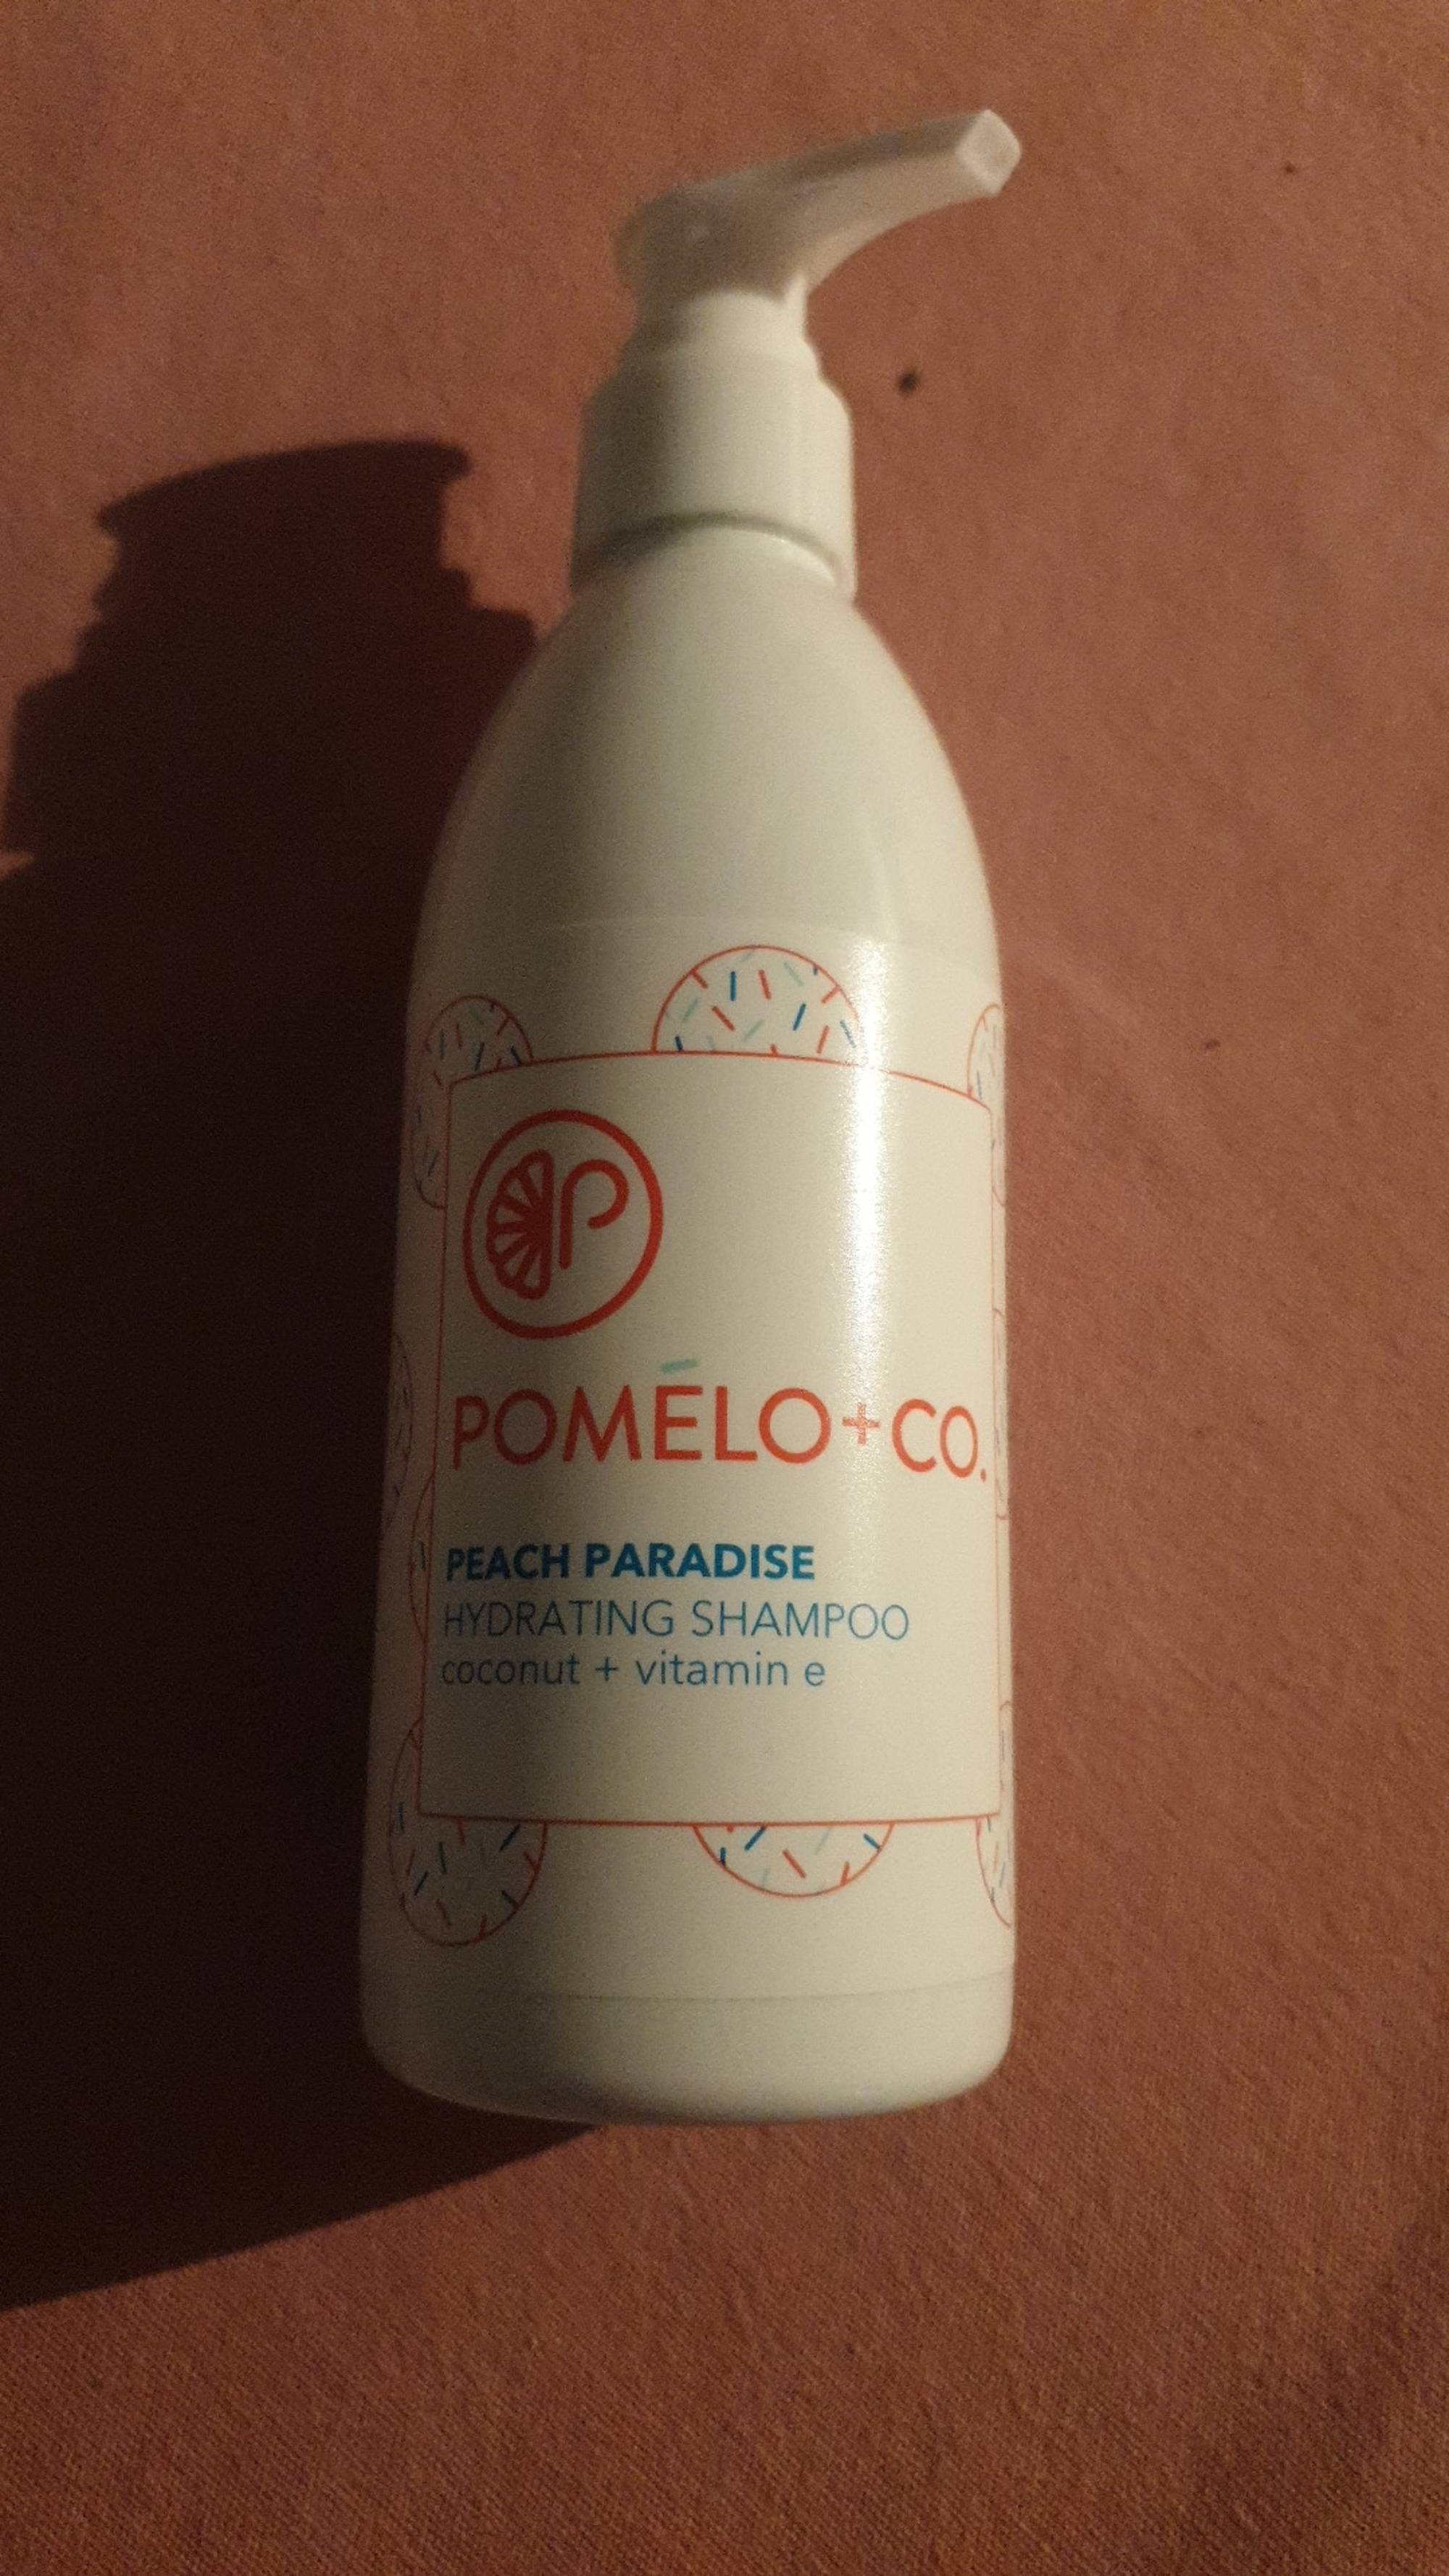 POMELO-CO - Peach paradise - Hydrating shampoo